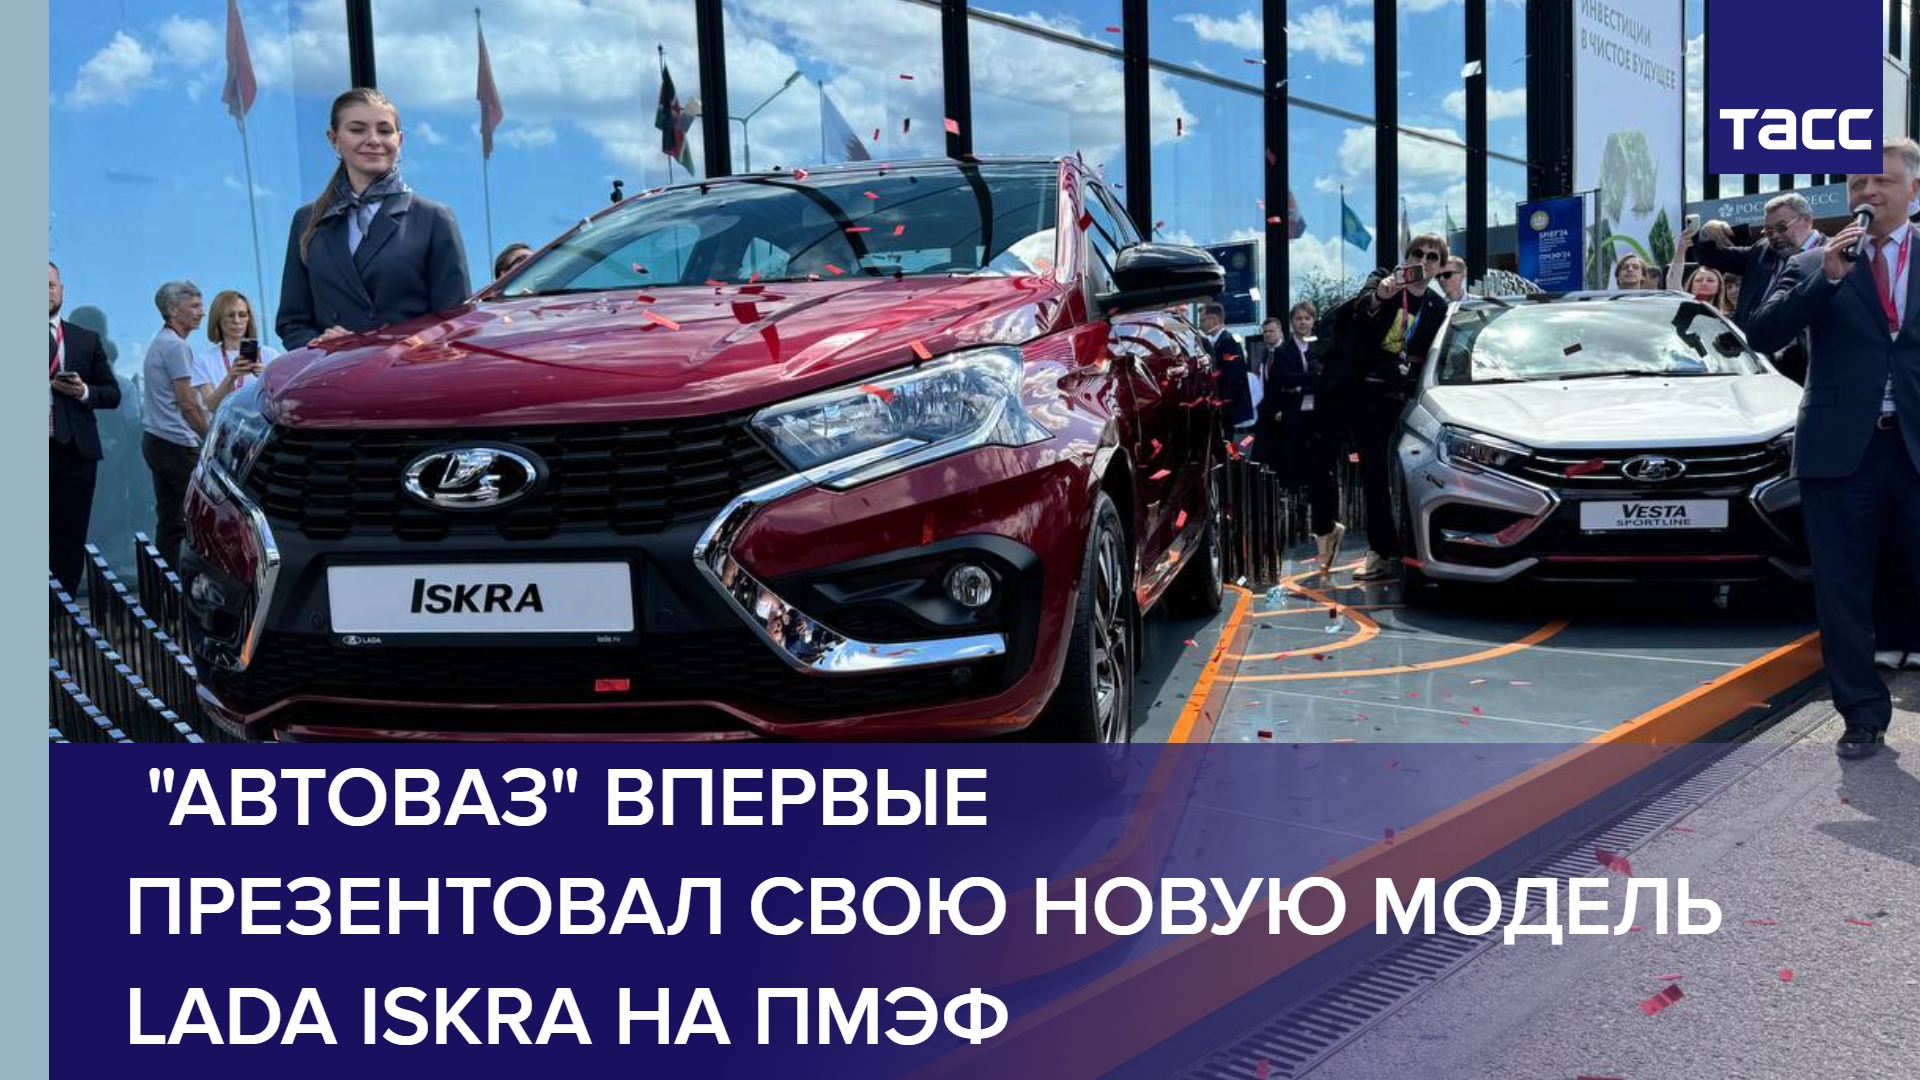 "Автоваз" впервые презентовал свою новую модель Lada Iskra на ПМЭФ